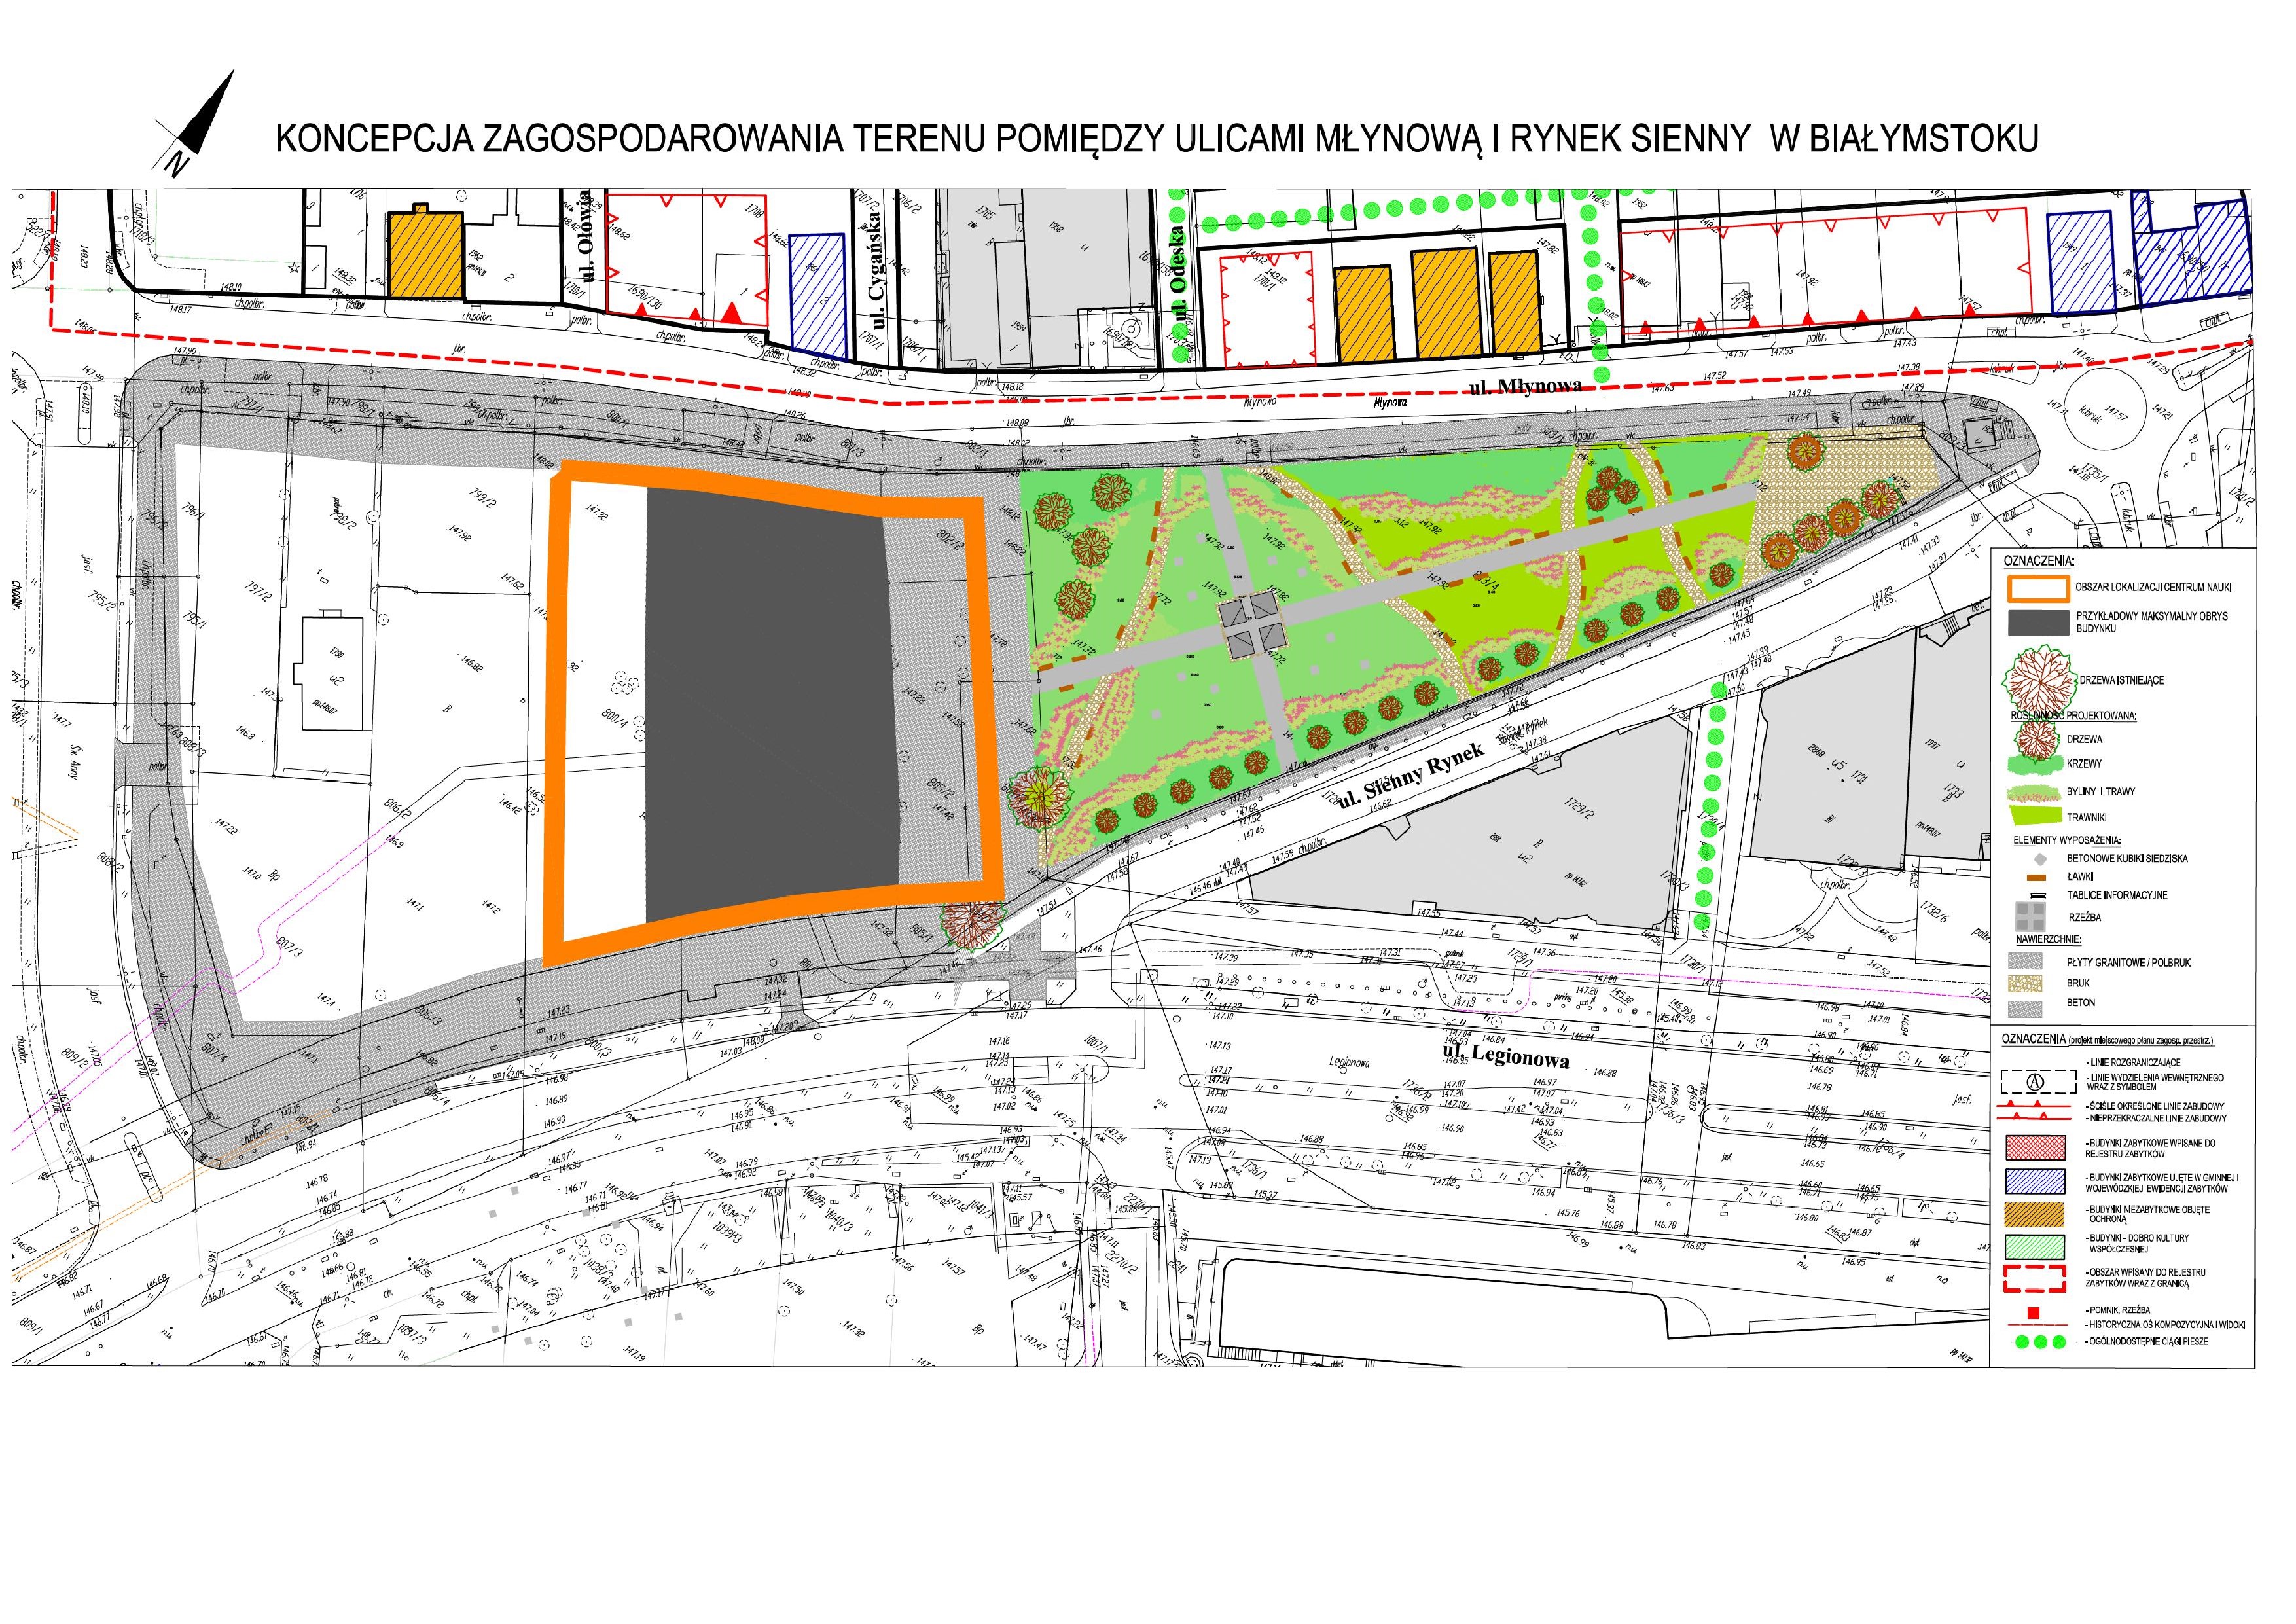 Koncepcja zagospodarowania terenu pomiędzy ulicami Młynową i Rynek Sienny